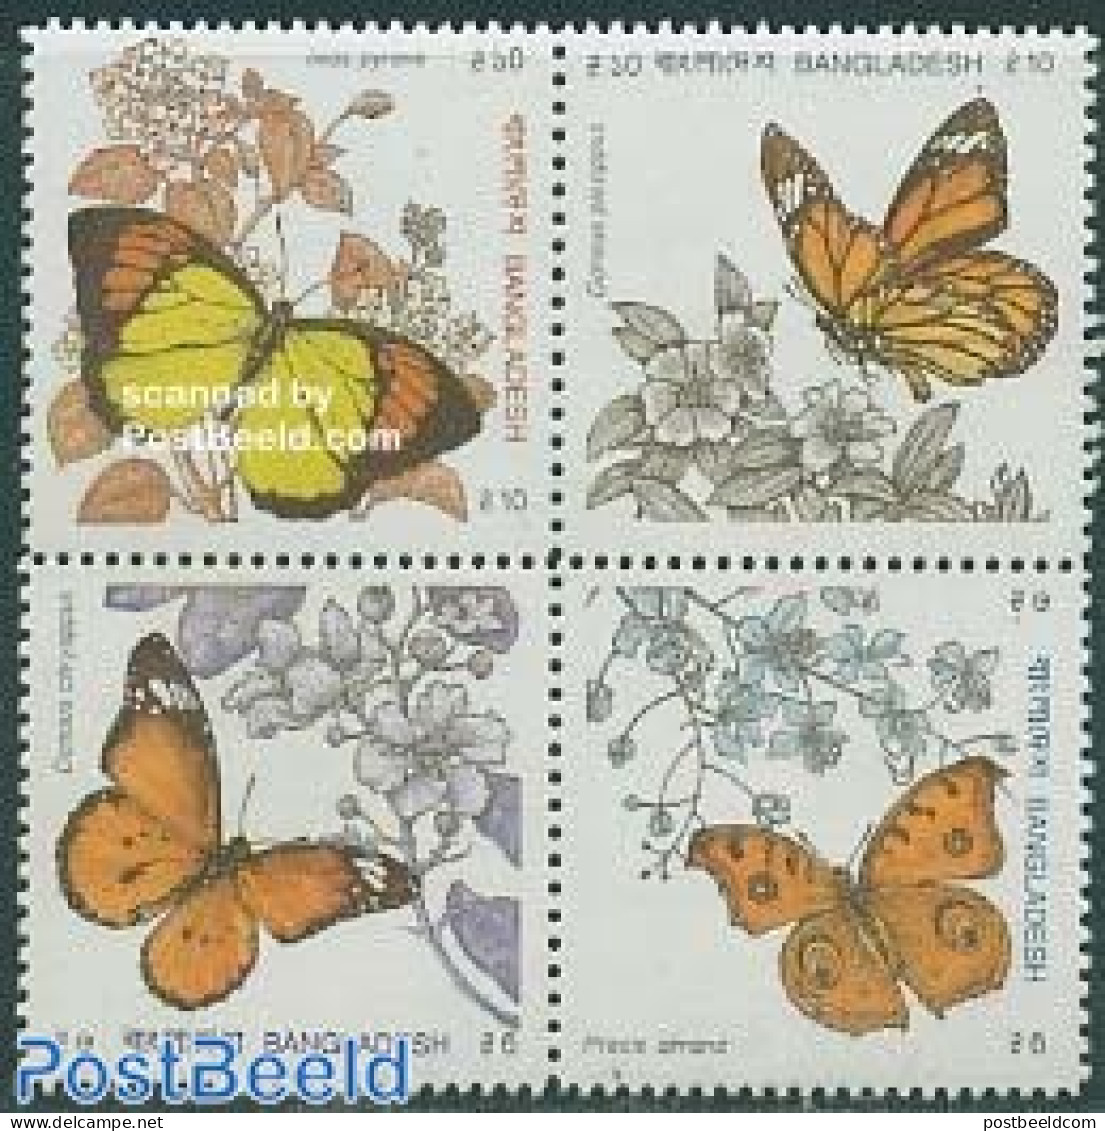 Bangladesh 1990 Butterflies 4v [+], Mint NH, Nature - Butterflies - Bangladesh